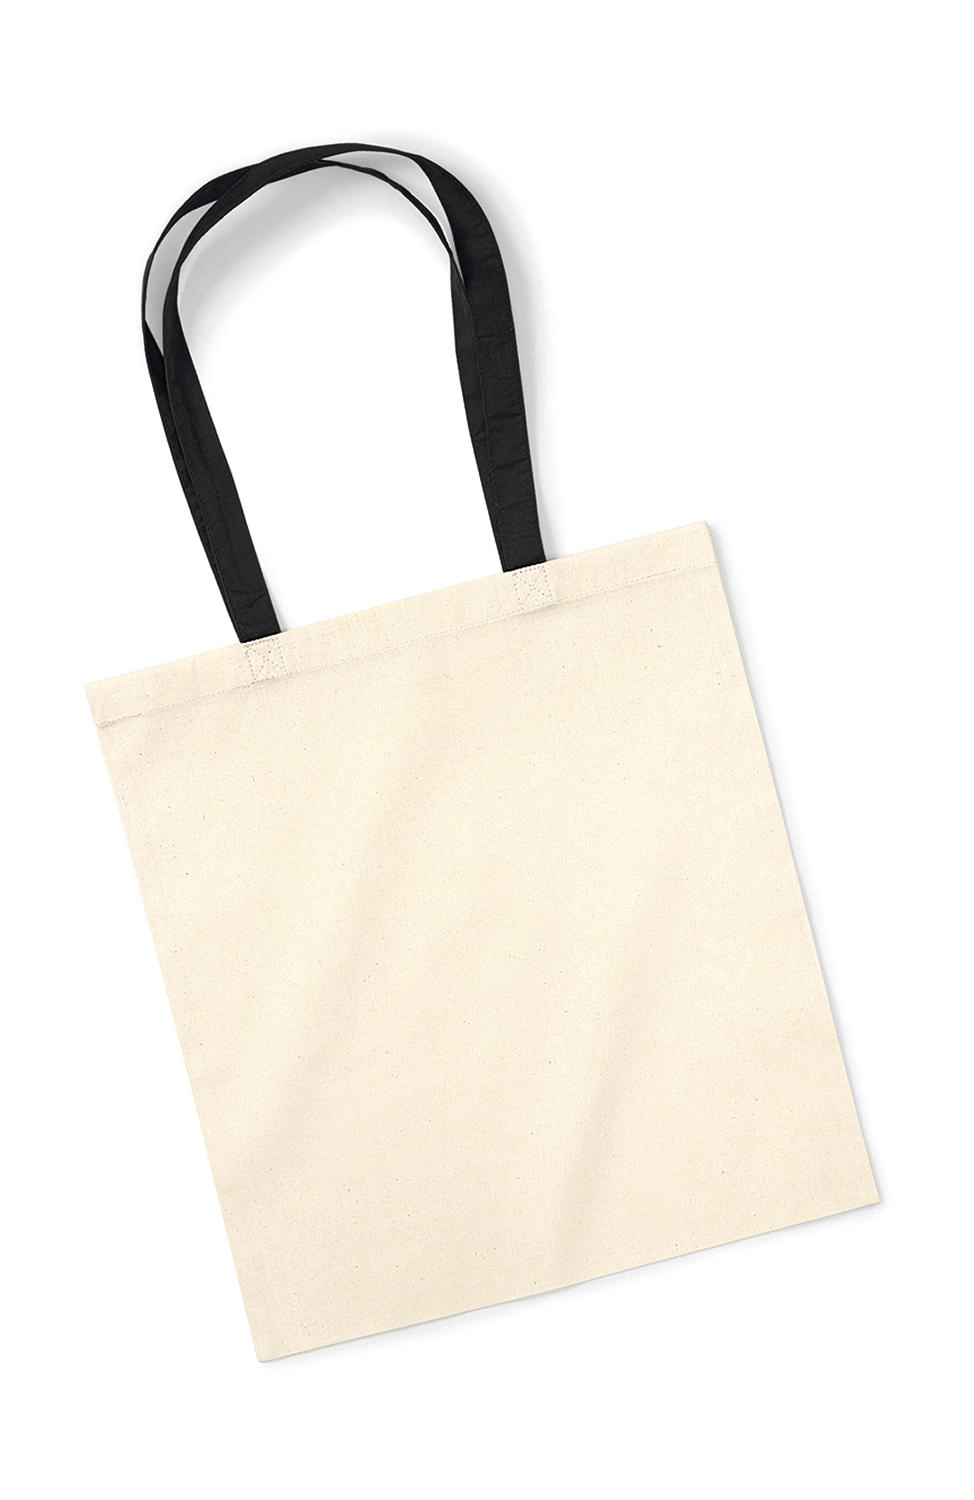 Bag for Life - Contrast Handles zum Besticken und Bedrucken in der Farbe Natural/Black mit Ihren Logo, Schriftzug oder Motiv.